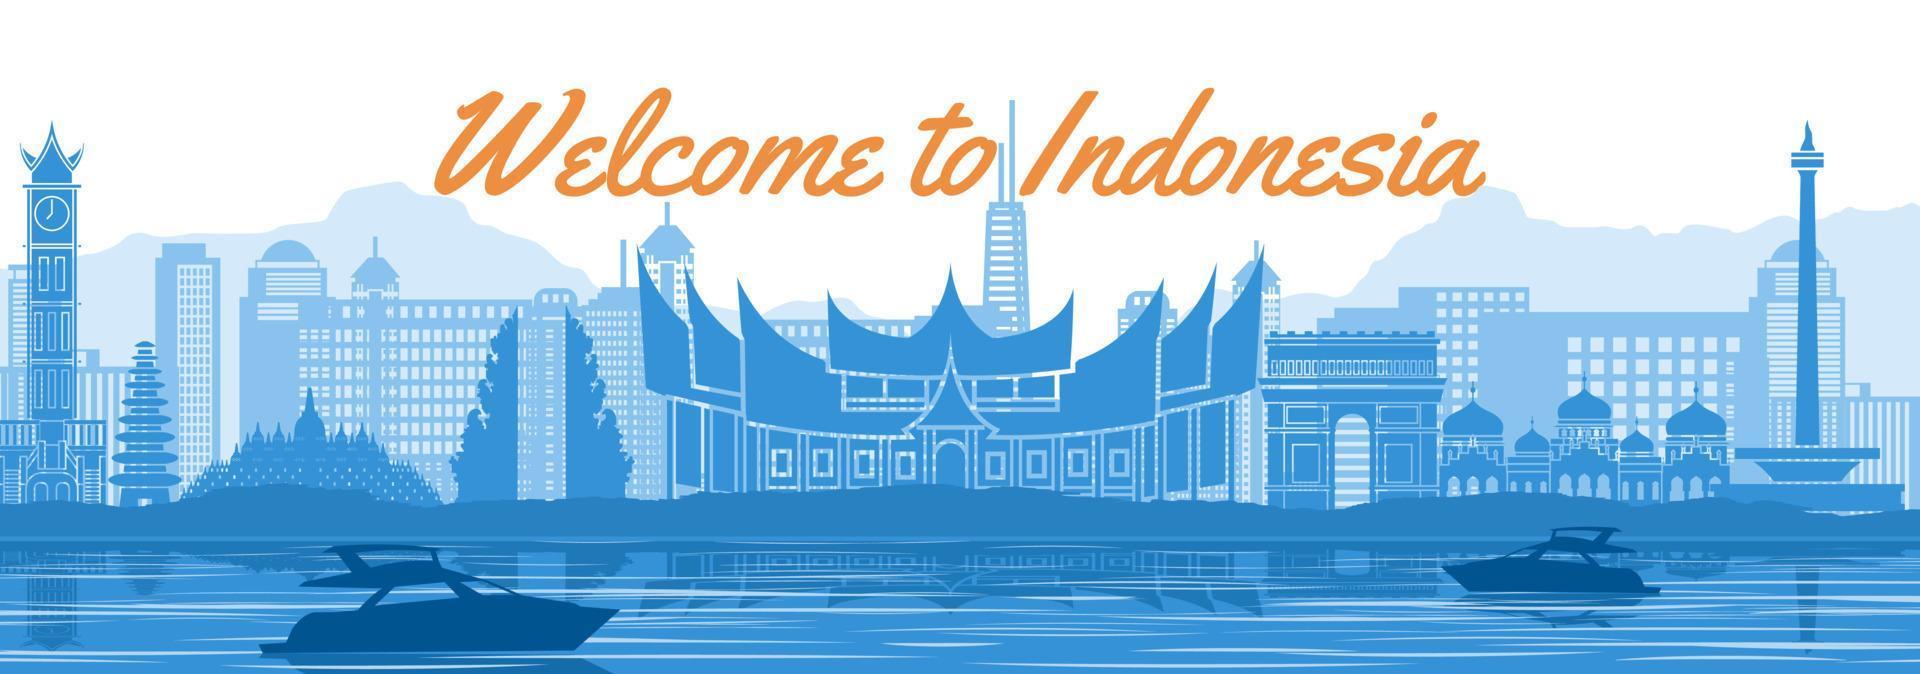 indonesiens berömda landmärke med blå och vit färgdesign vektor